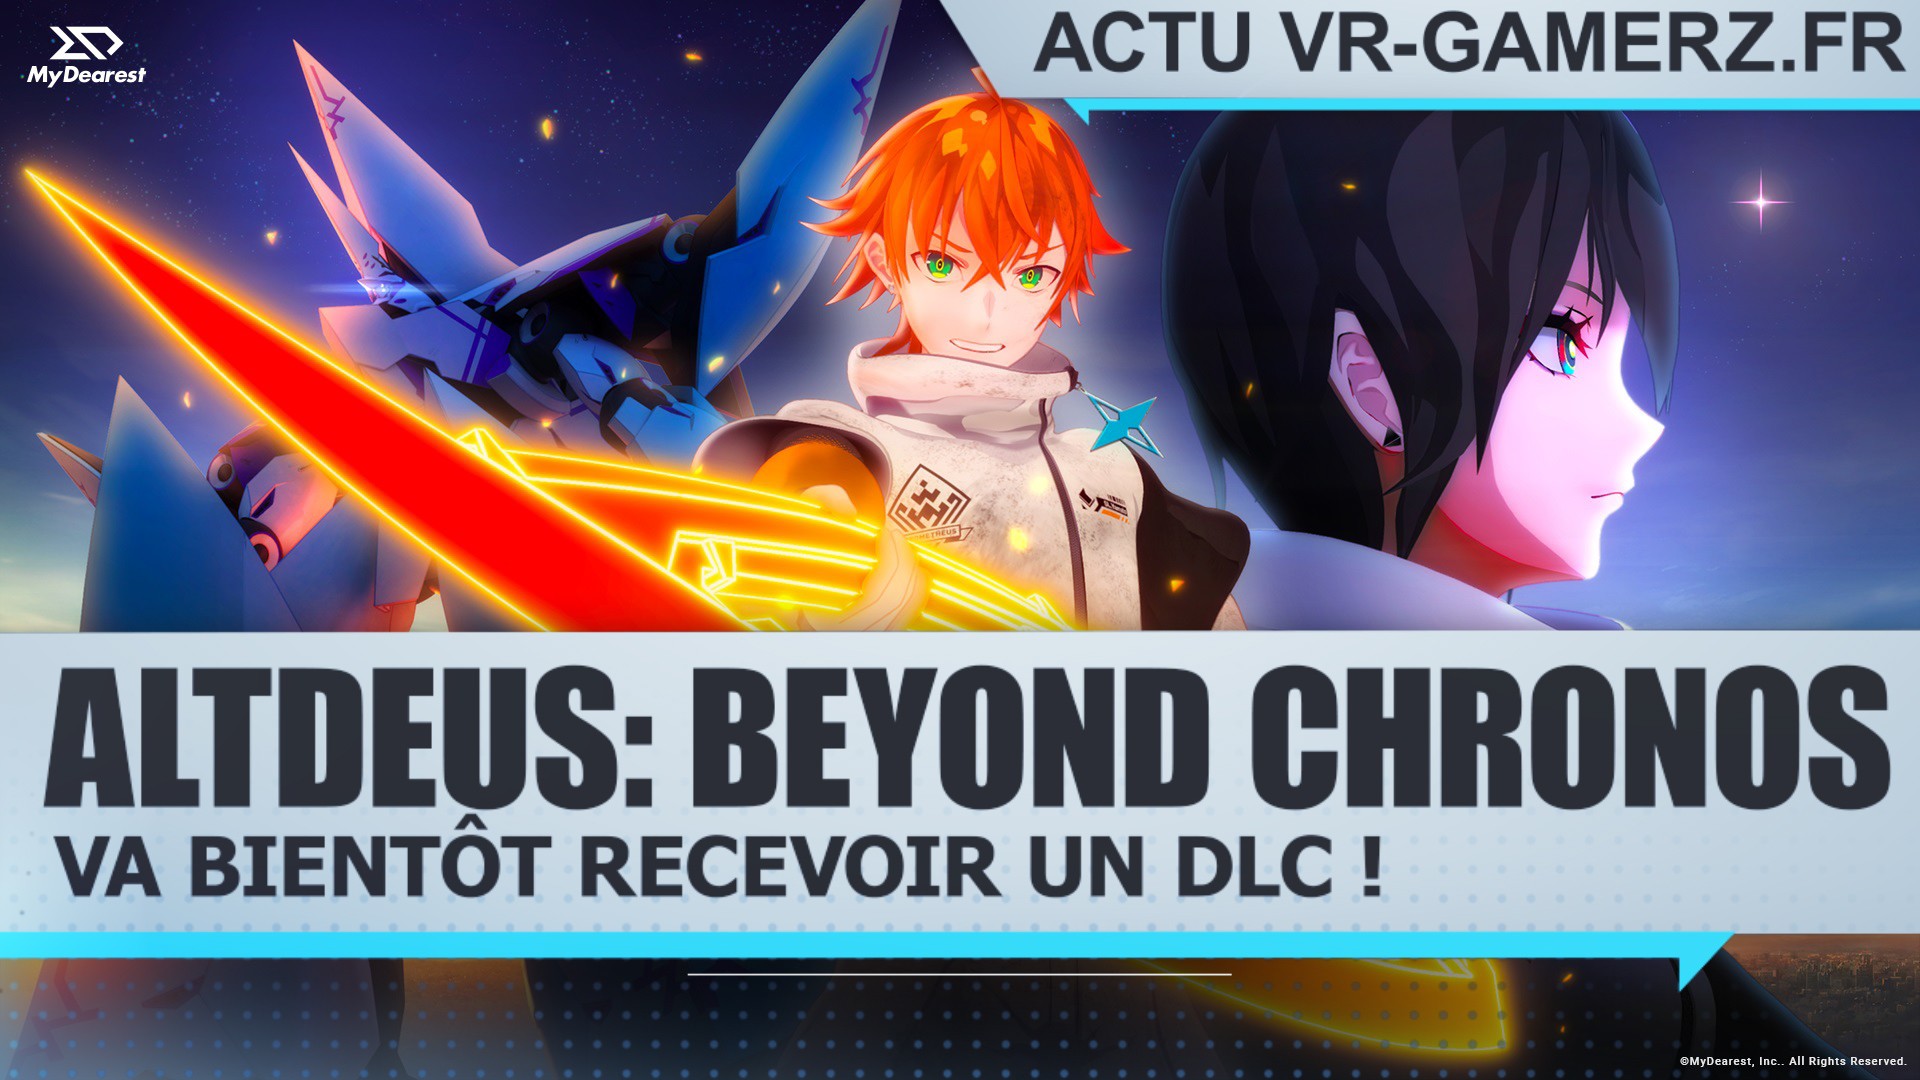 ALTDEUS: Beyond Chronos va bientôt recevoir un DLC !